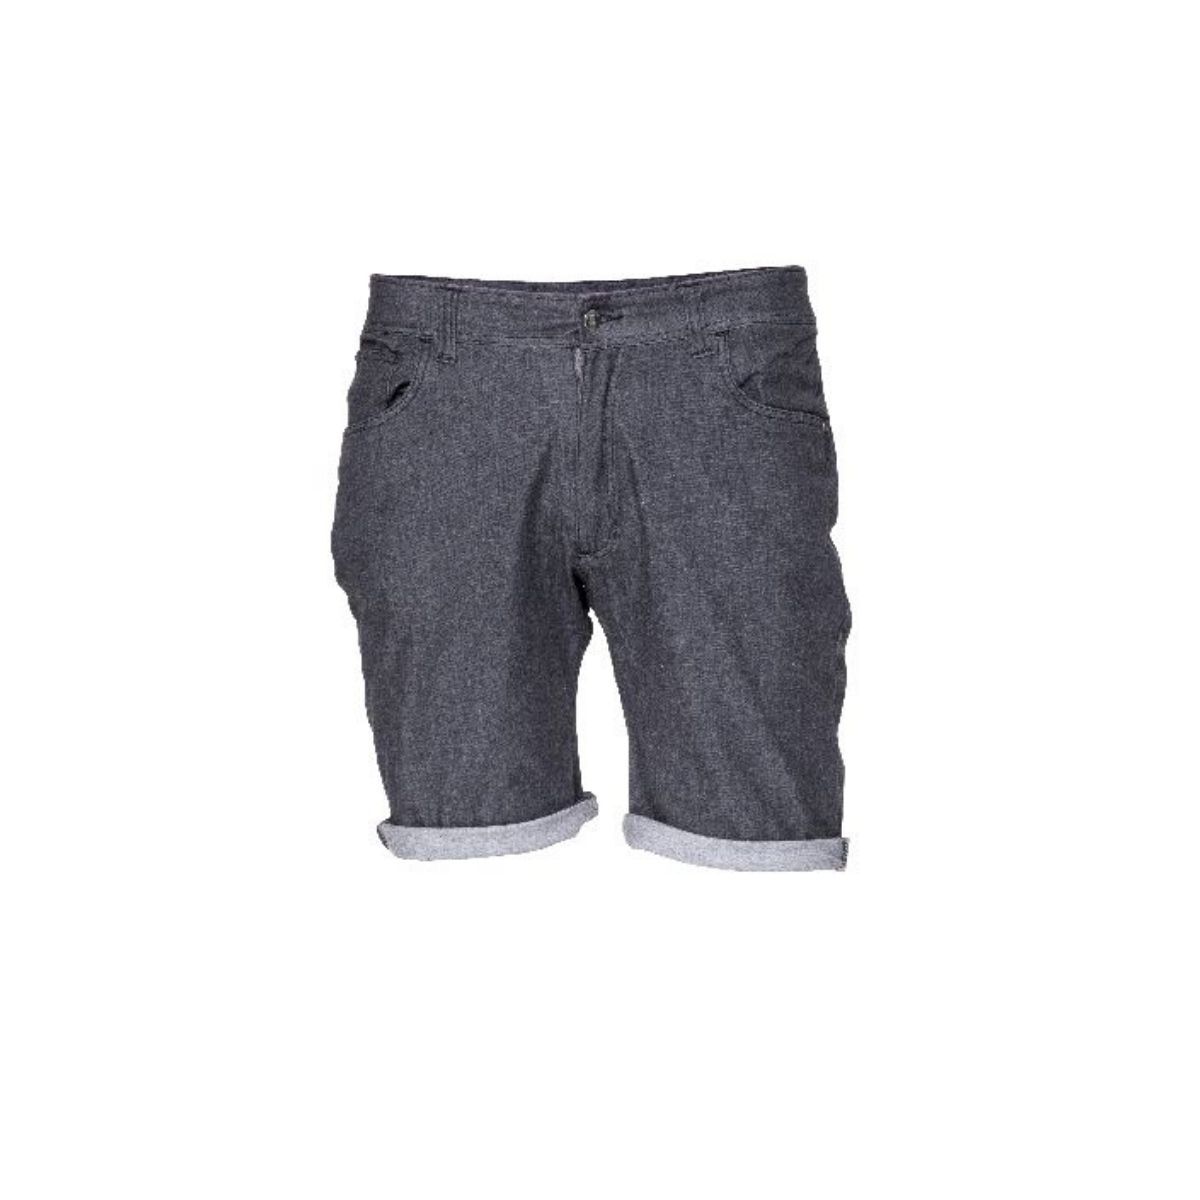 Snap Slim Jean - Pantalones cortos de escalada - Hombre